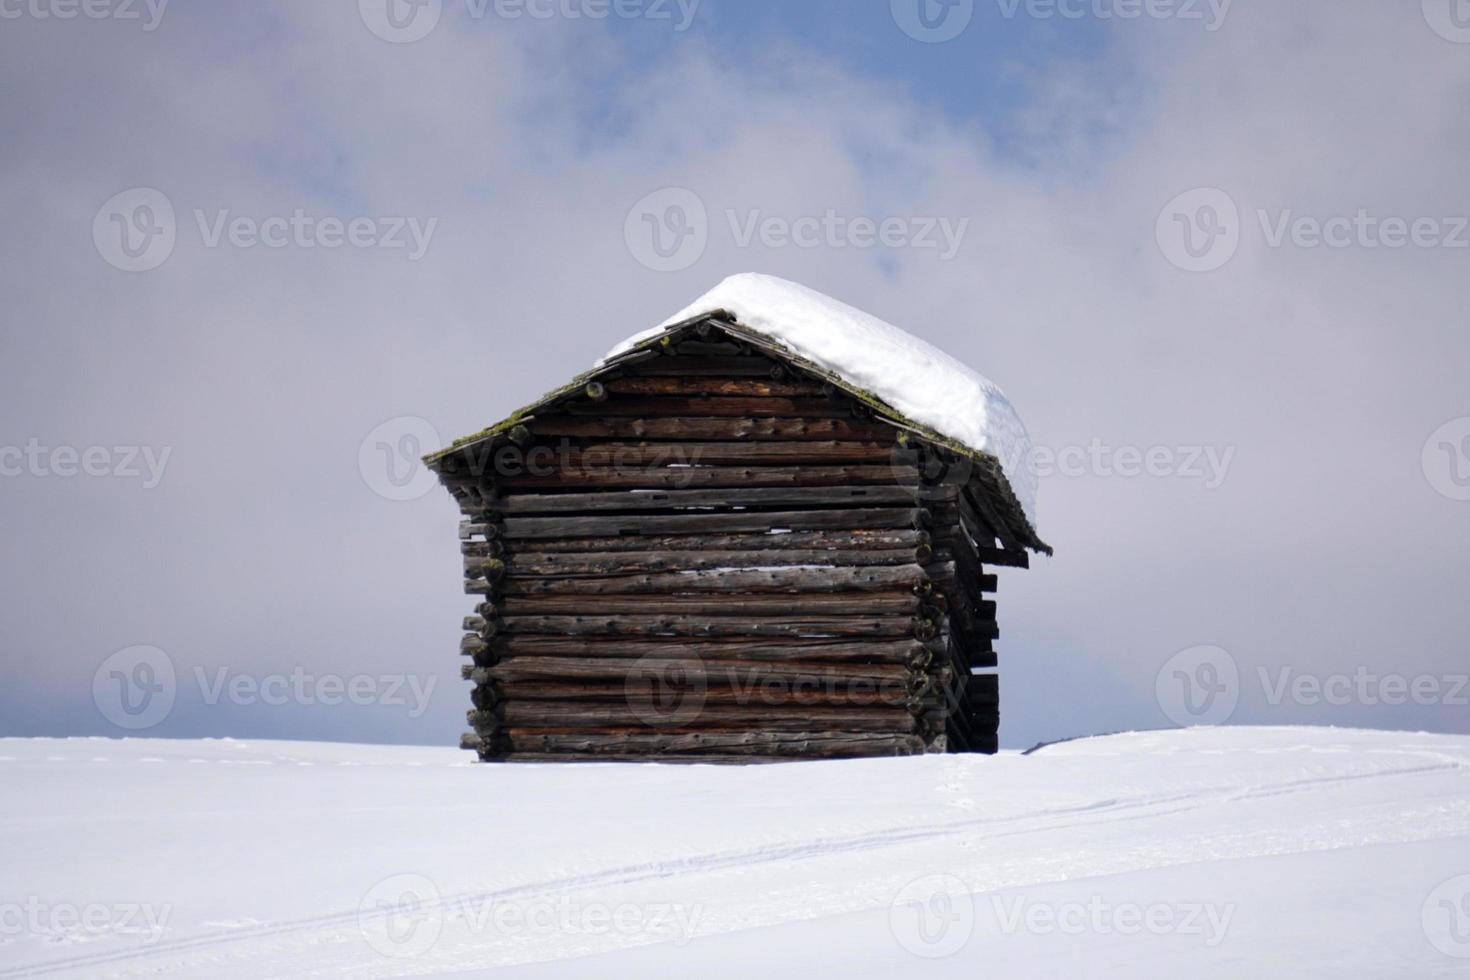 cabana de madeira no fundo da neve do inverno foto